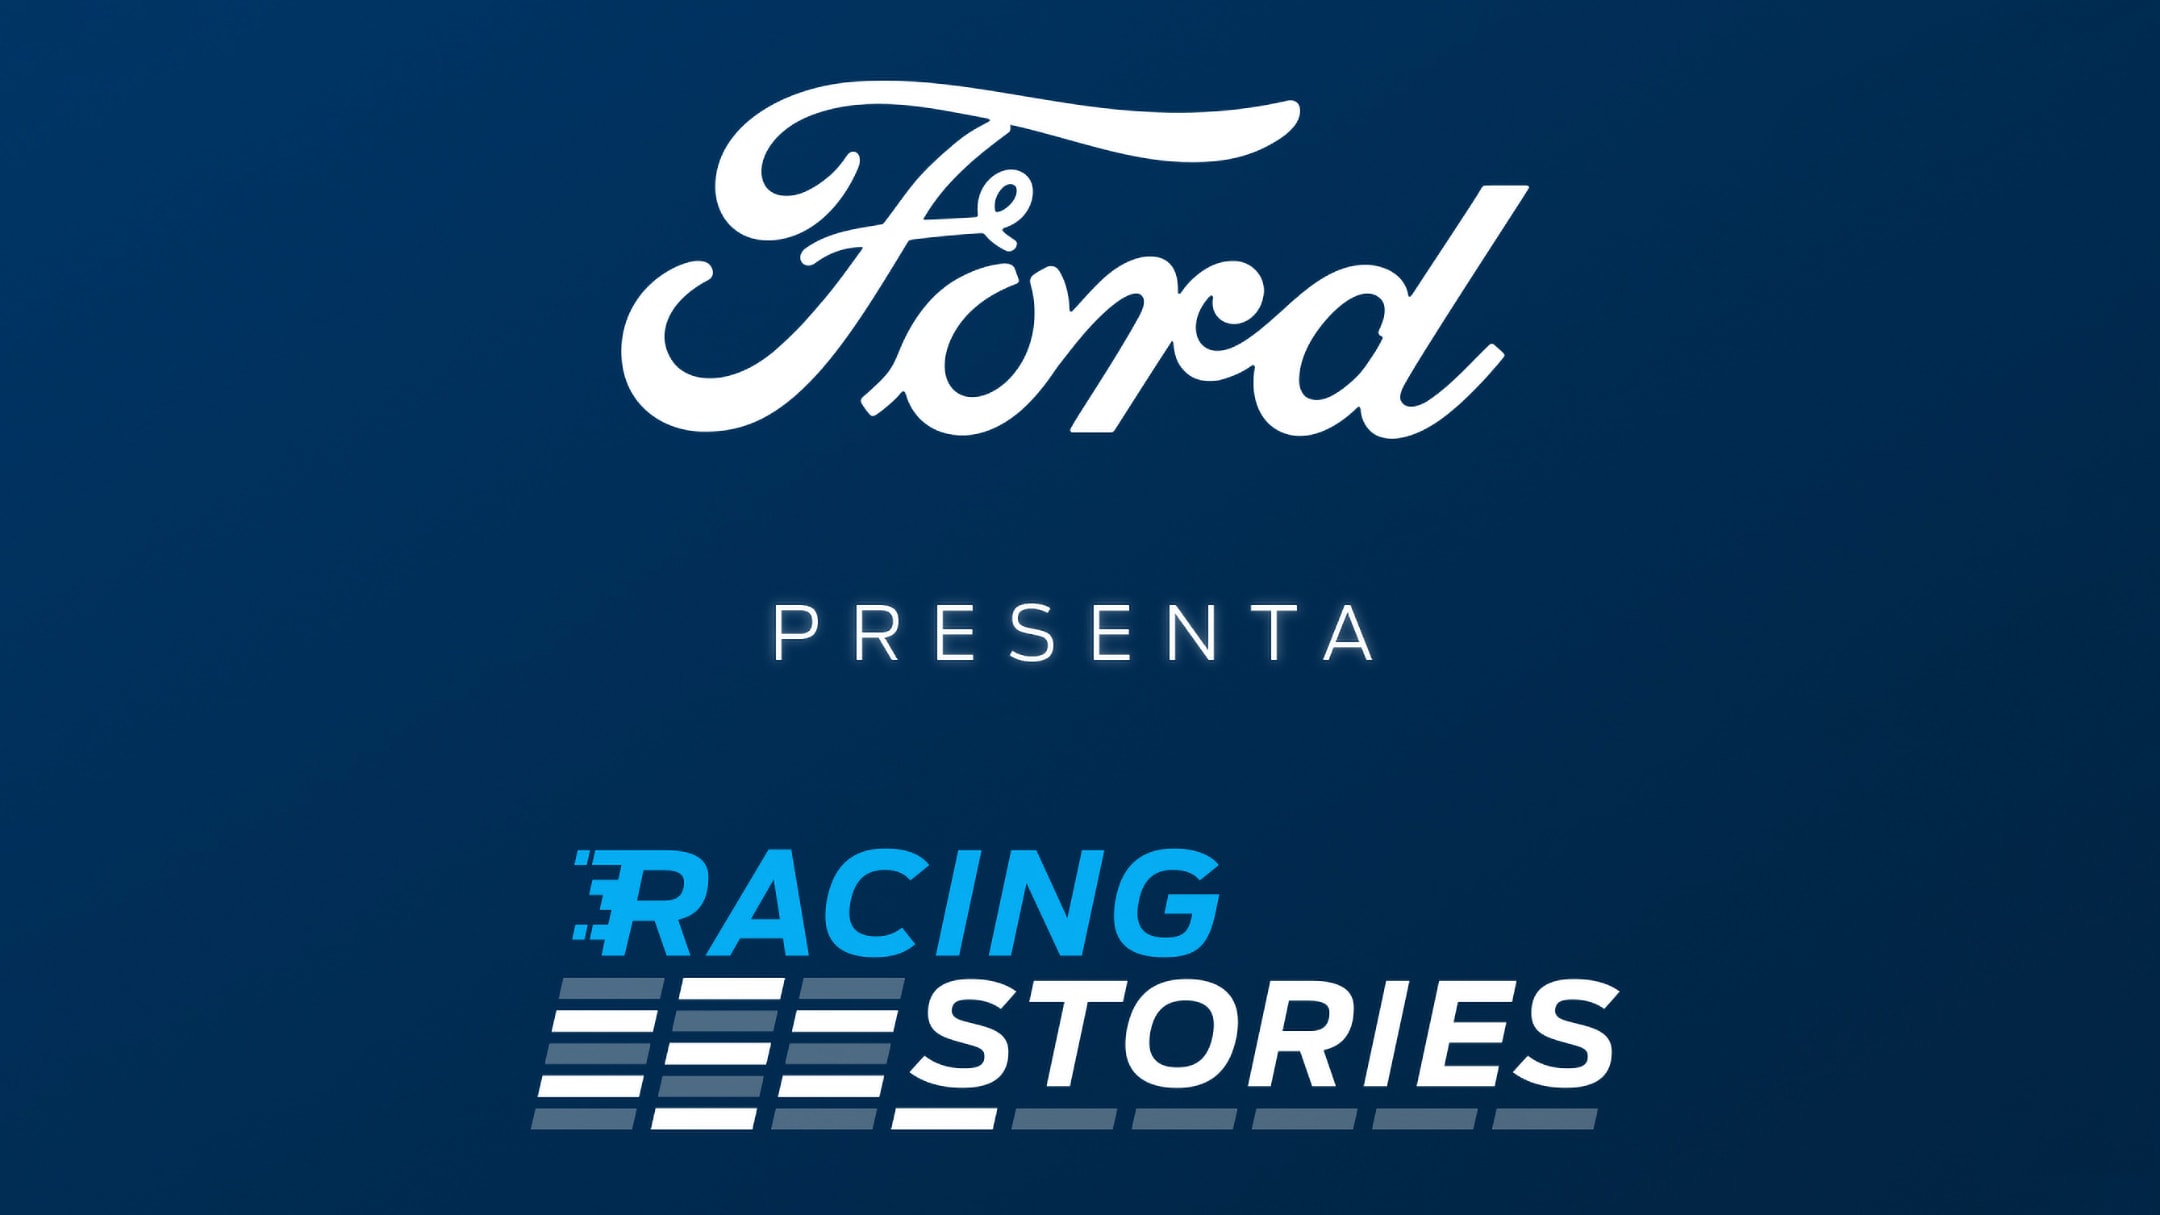 Racing stories